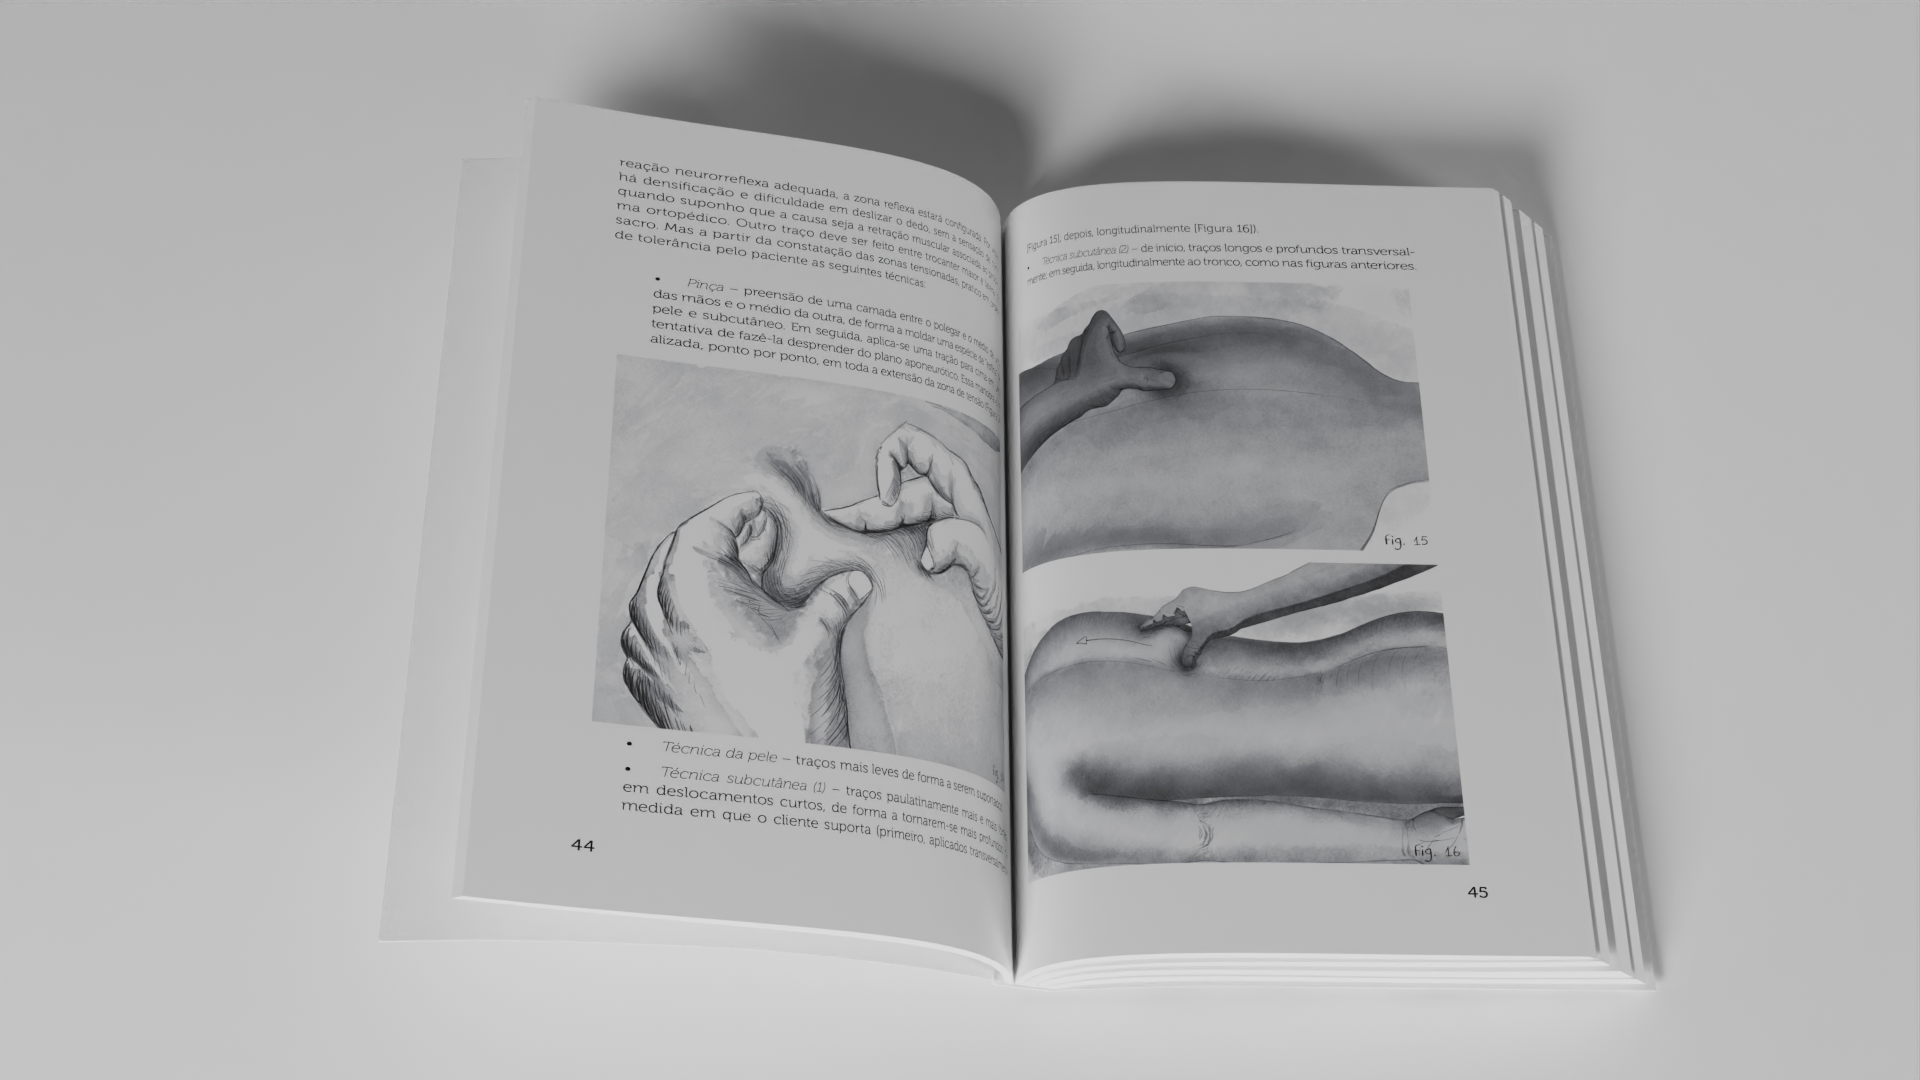 Ilustrações e design do interior do livro "Em Movimento", mockup 3D em Blender/Cycles